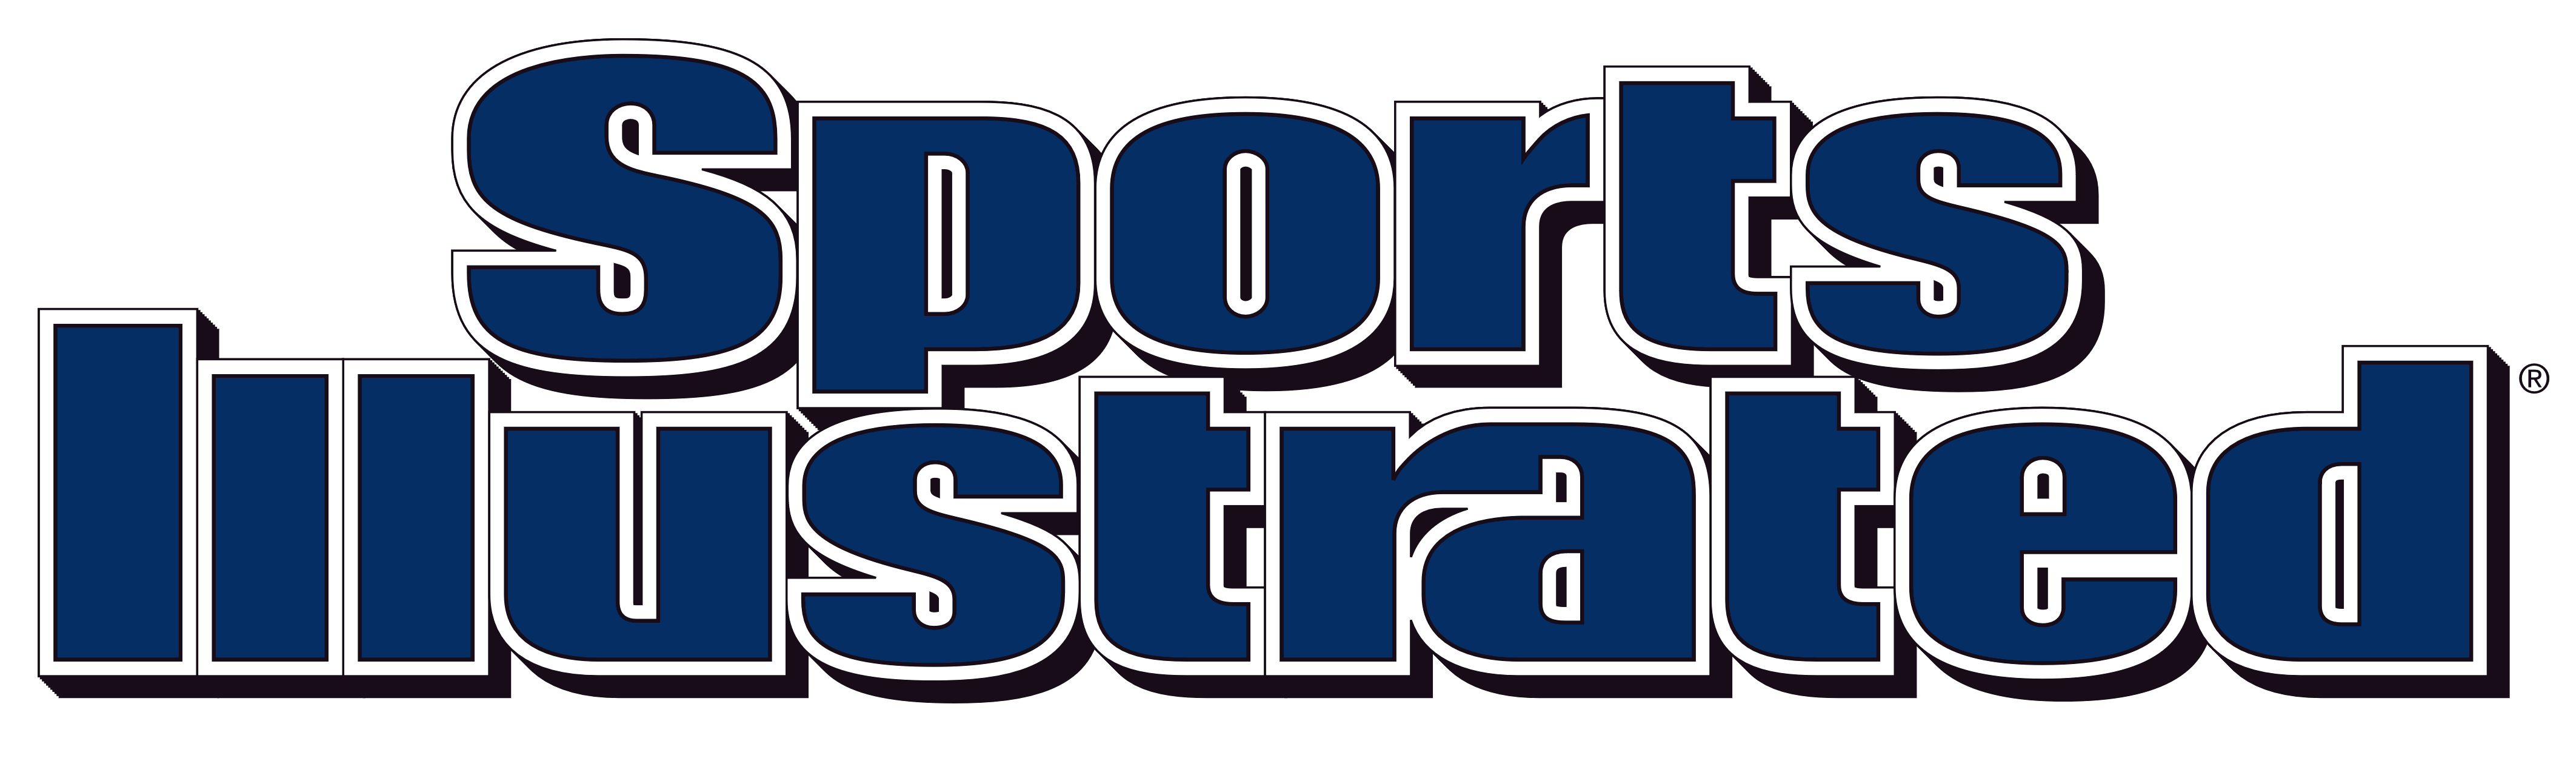 Sports Illustrated logo, logotype